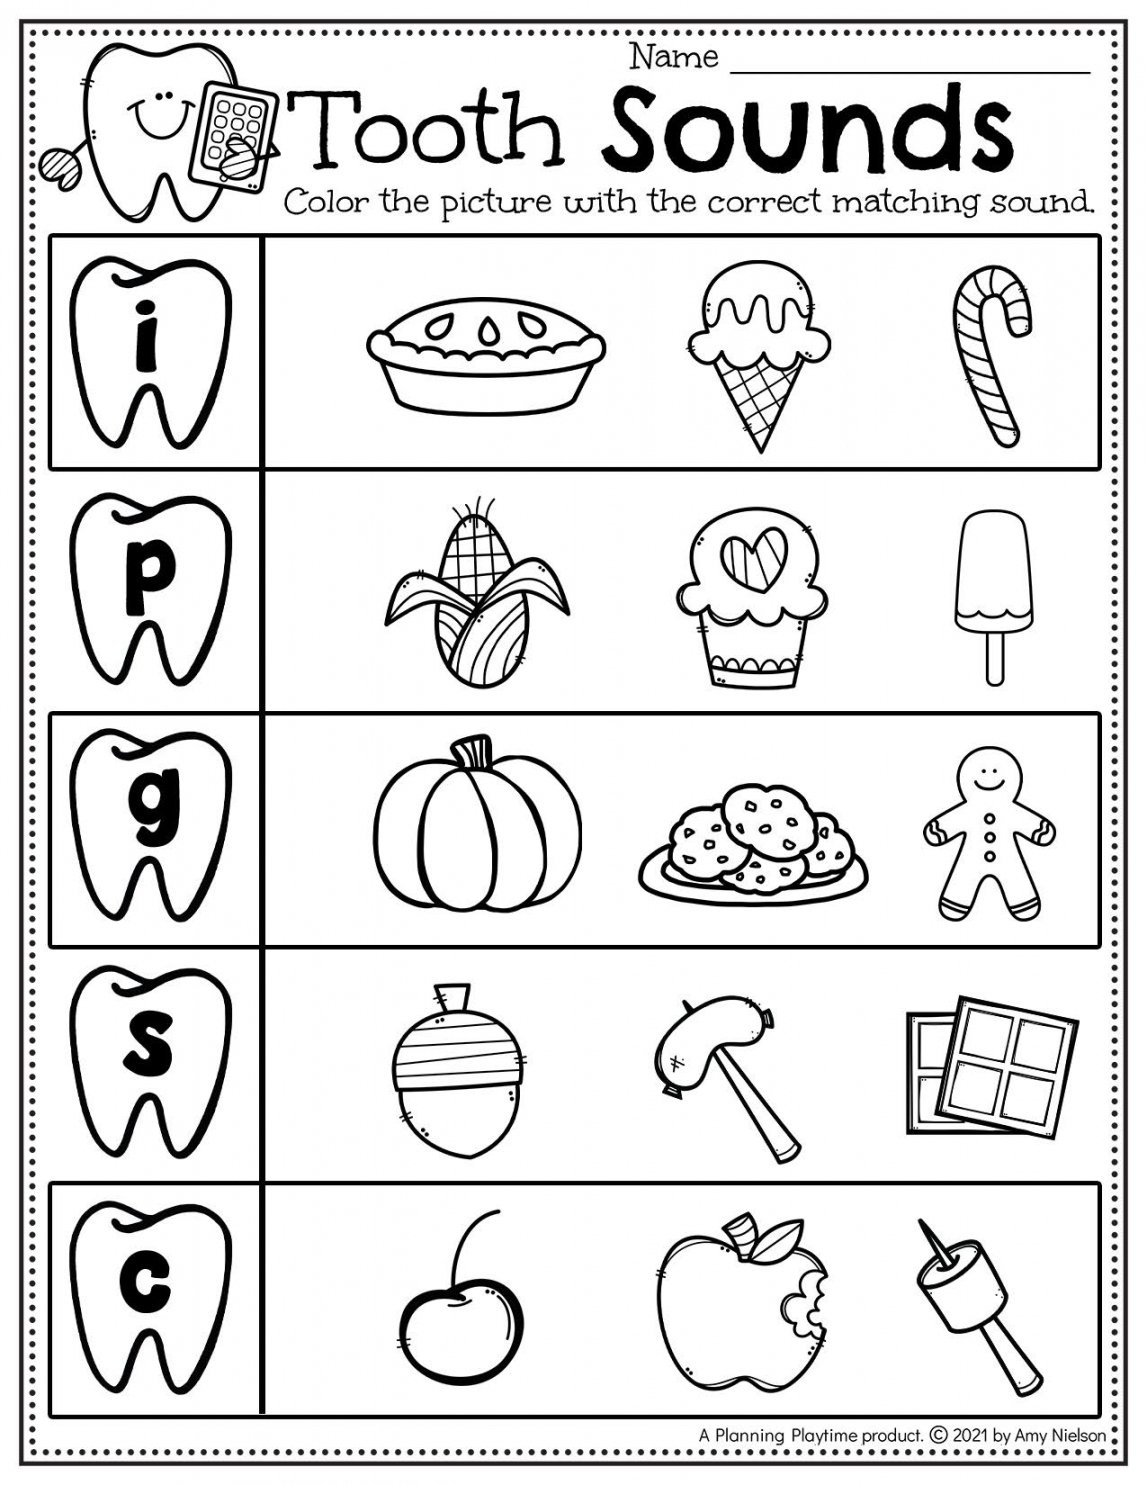 Dental Health Worksheets Preschool - Planning Playtime - FREE Printables - Free Printable Dental Health Worksheets